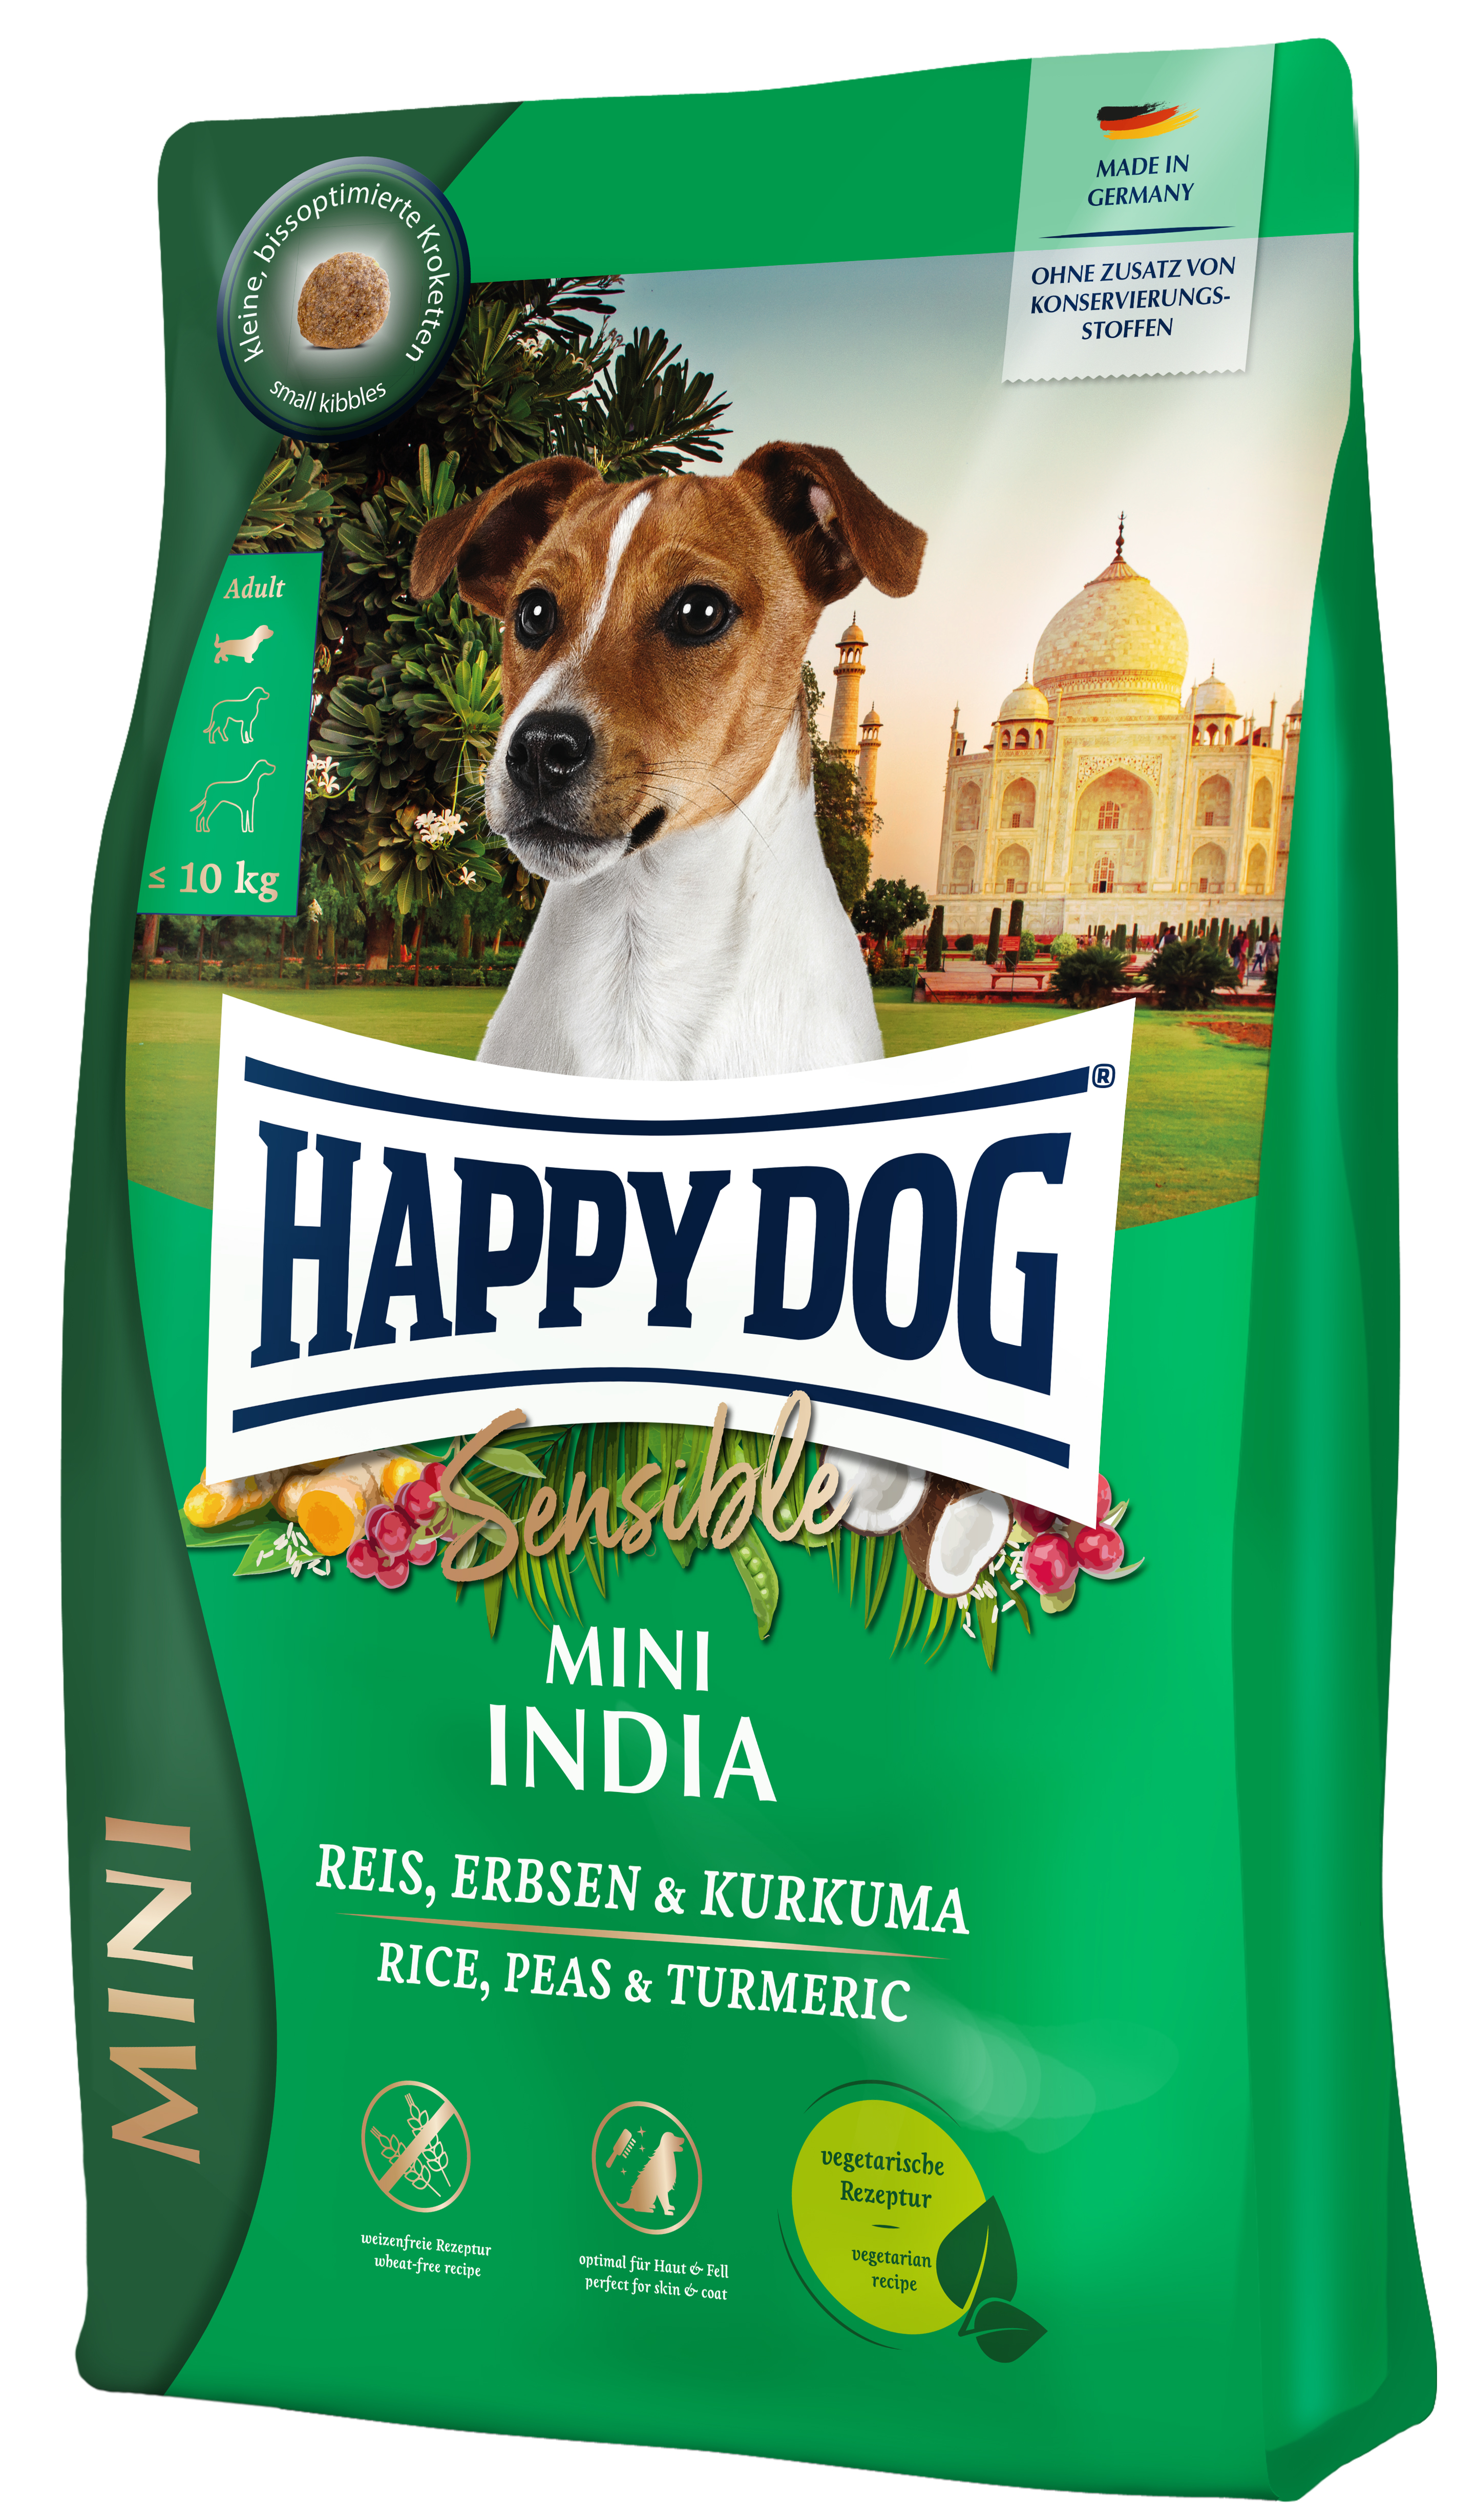 Happy Dog Sensible Mini India 4 kg